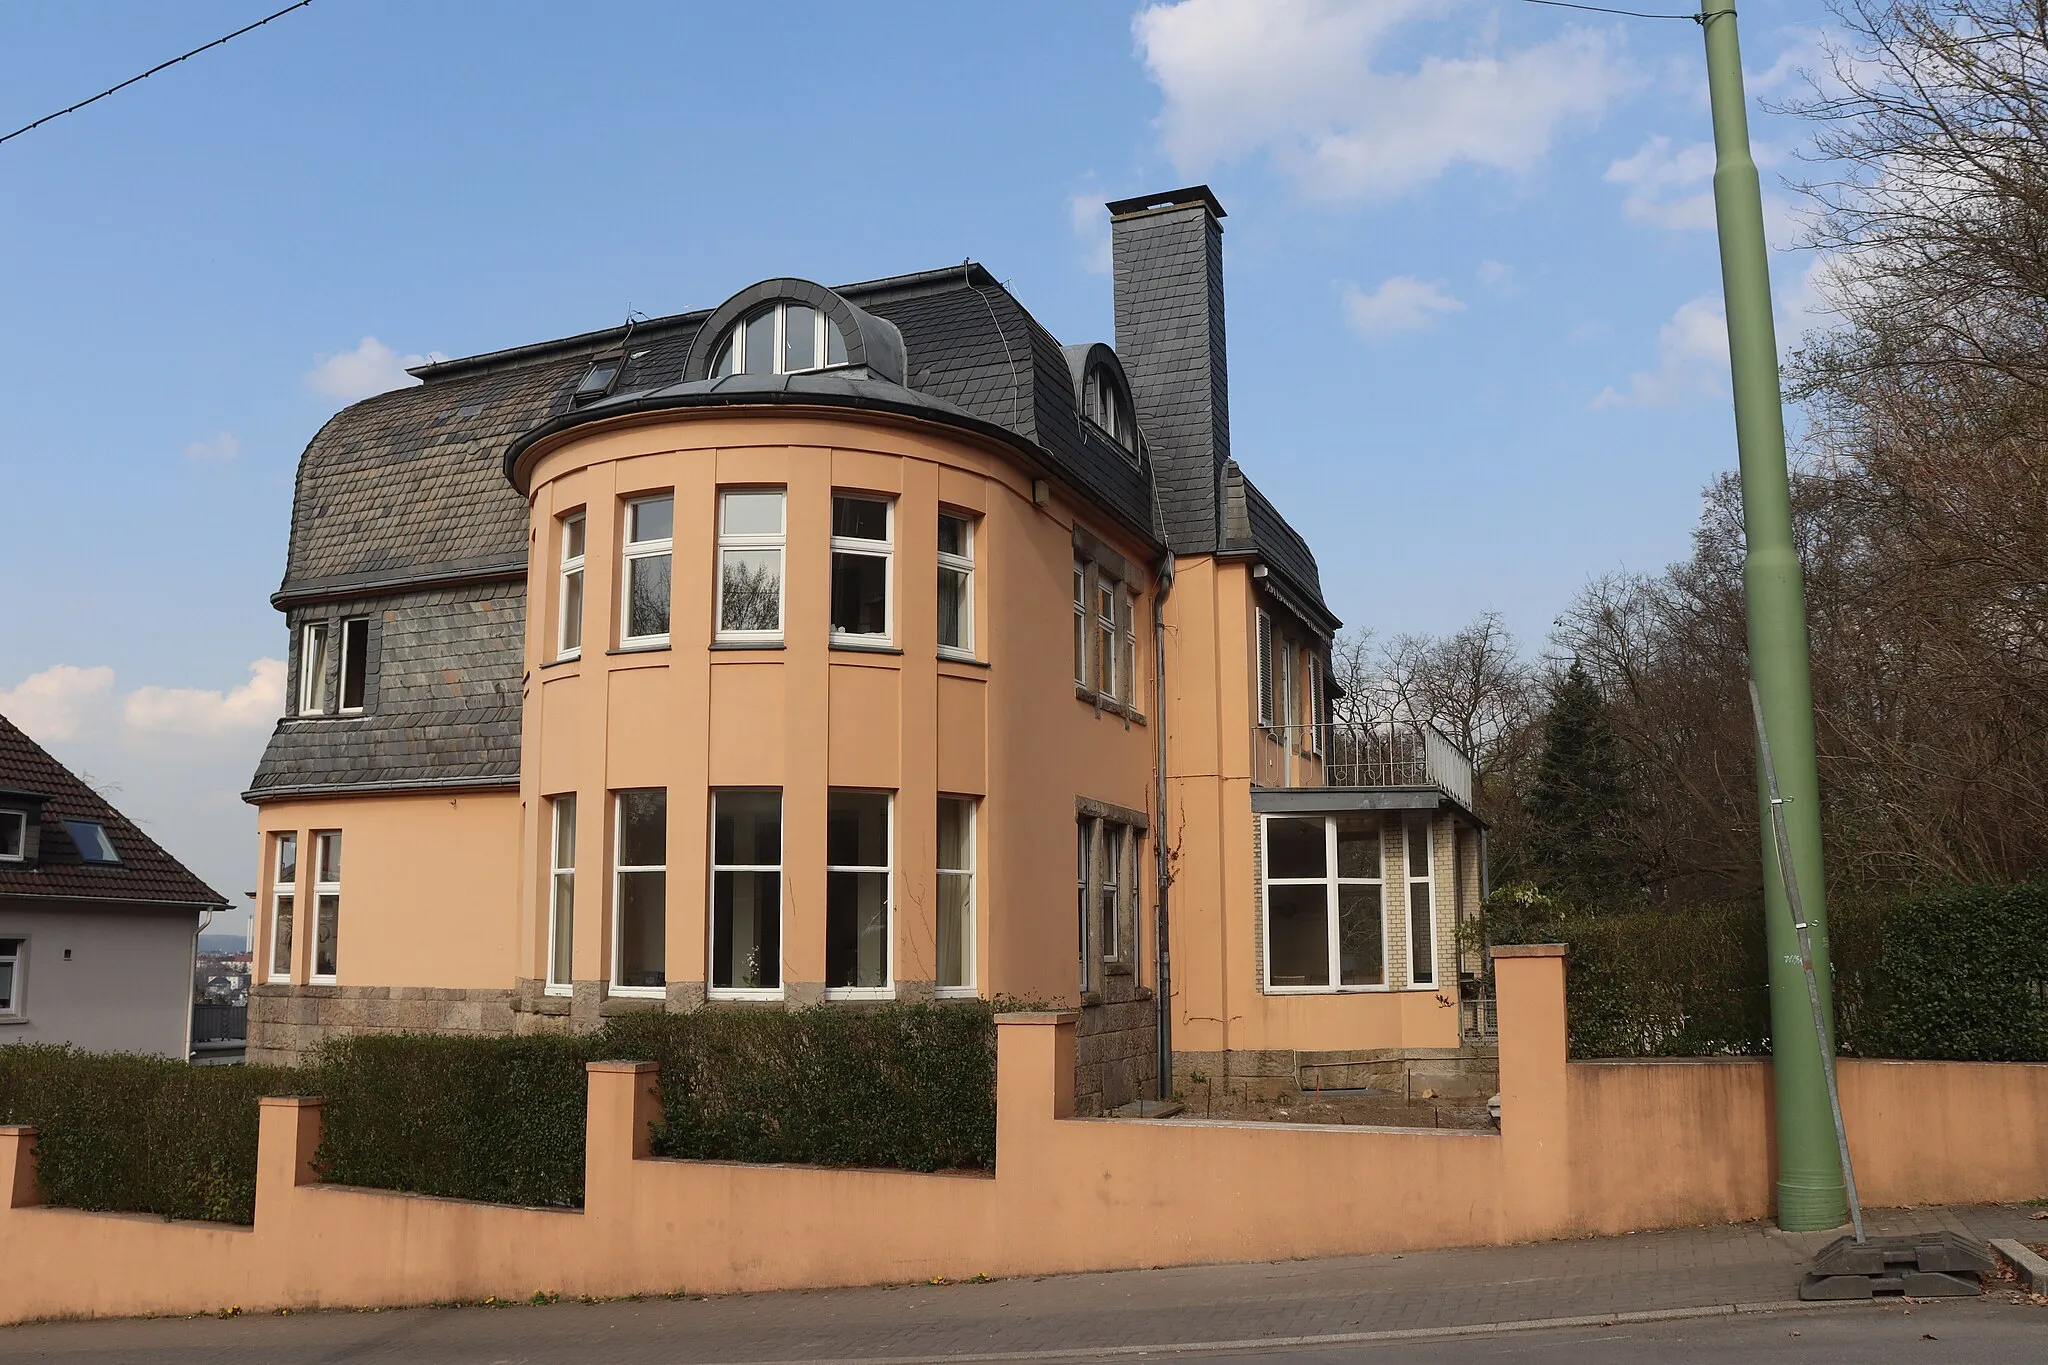 Photo showing: Foto der Unternehmervilla Springmann in Hagen Wehringhausen des belgischen Architekten Henry van de Velde.